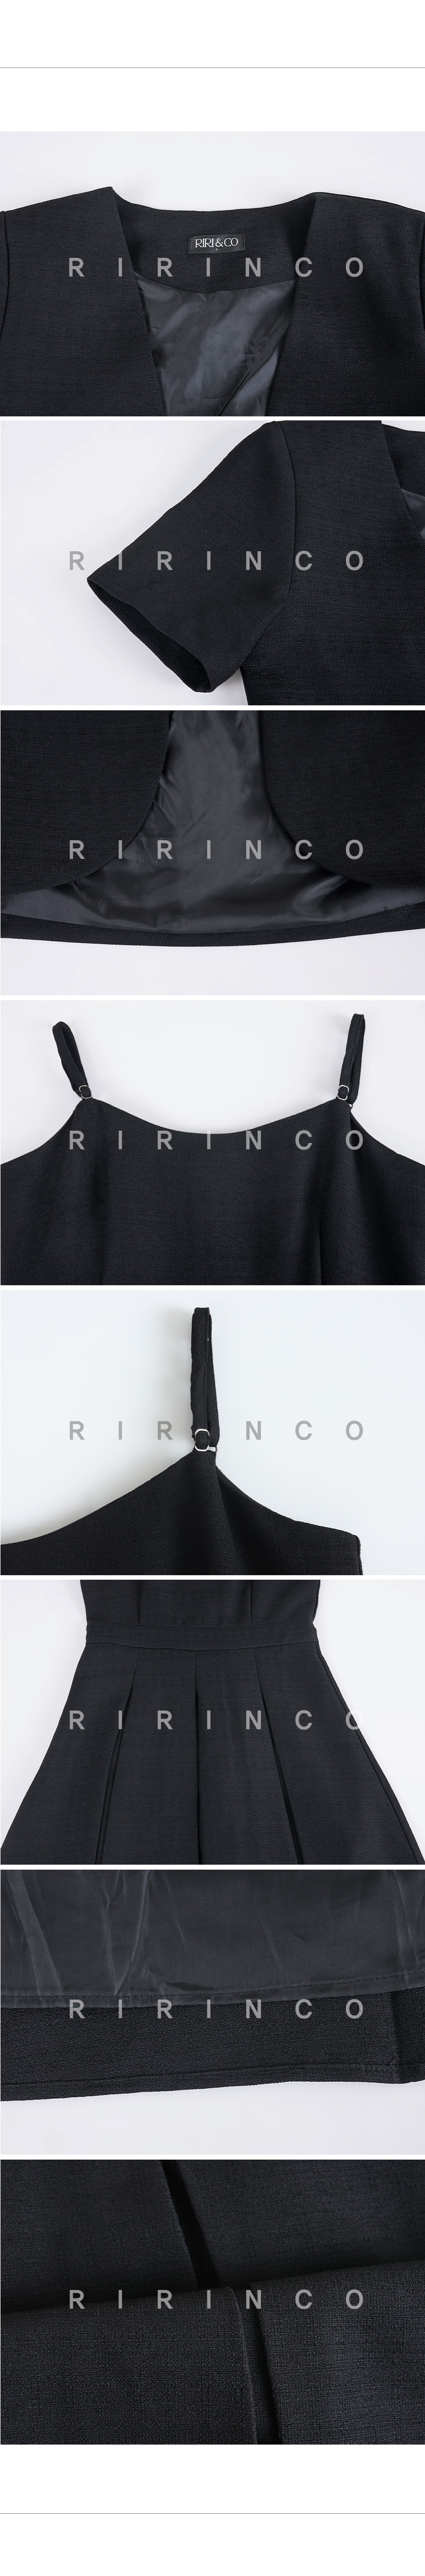 RIRINCO クロップド半袖ジャケット&プリーツロングワンピースセット